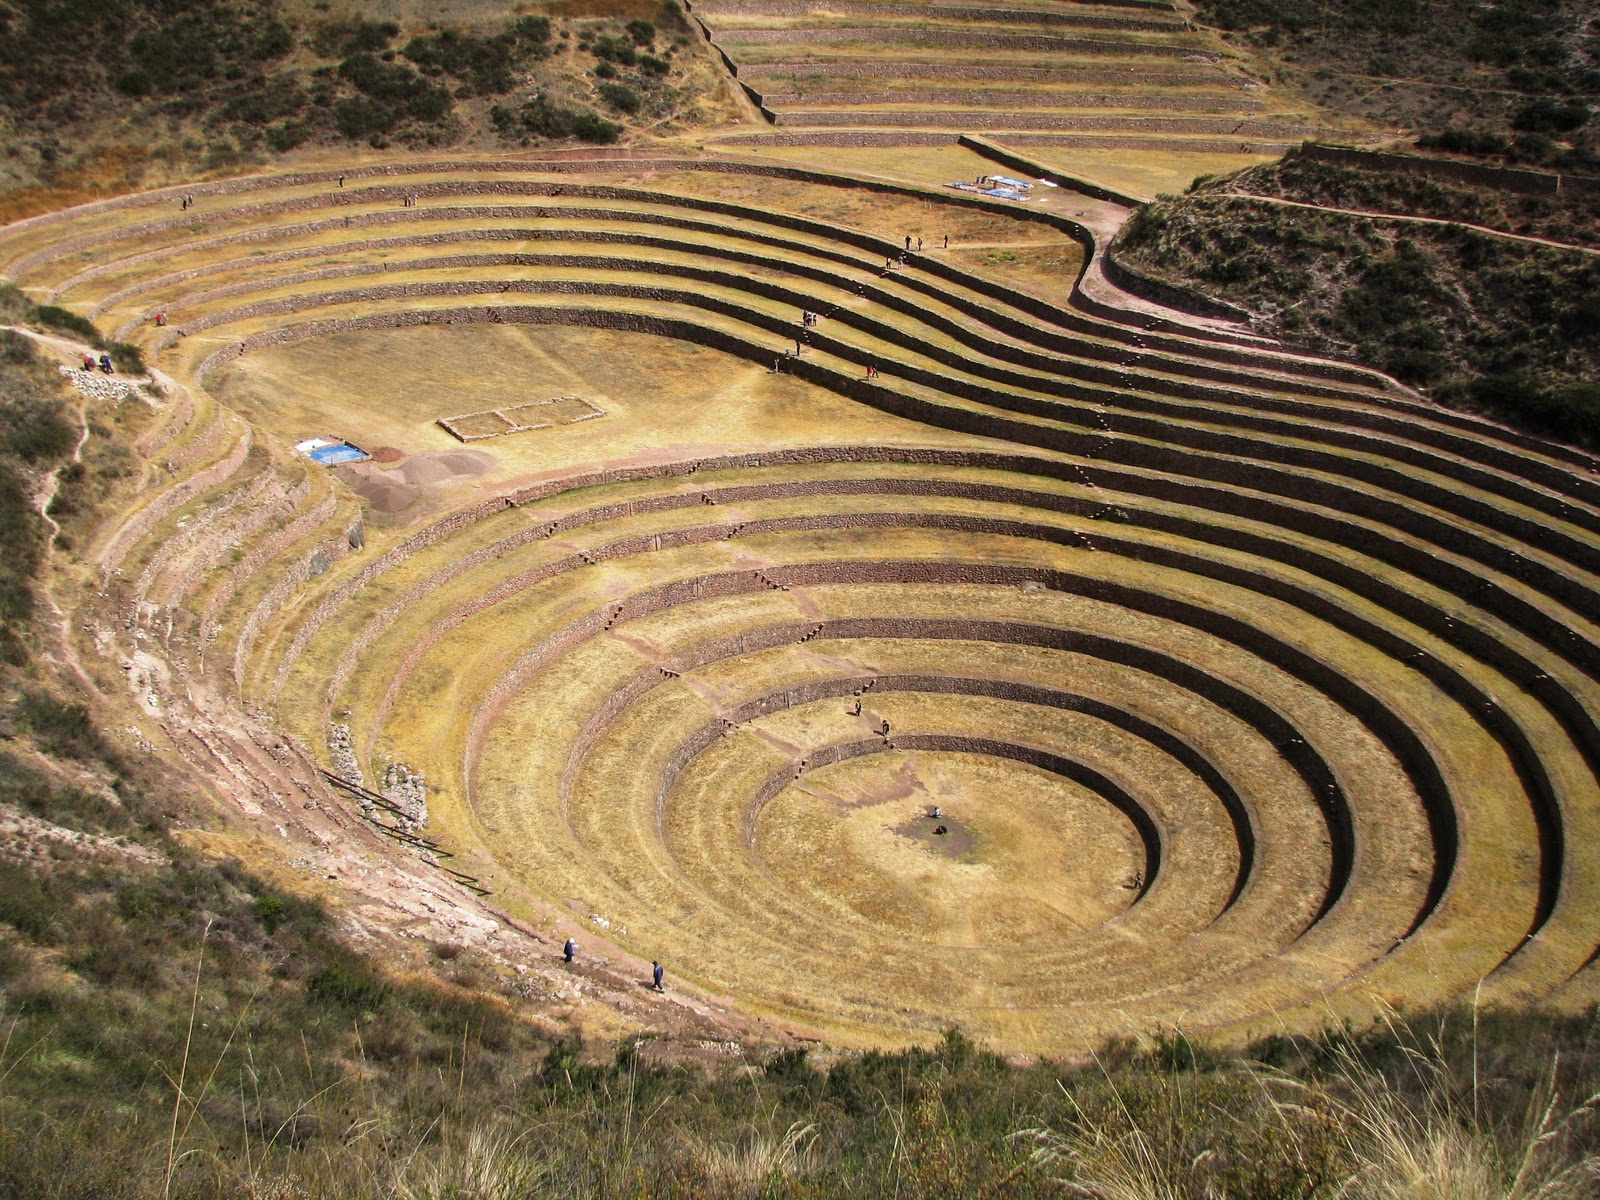 Inca Crops